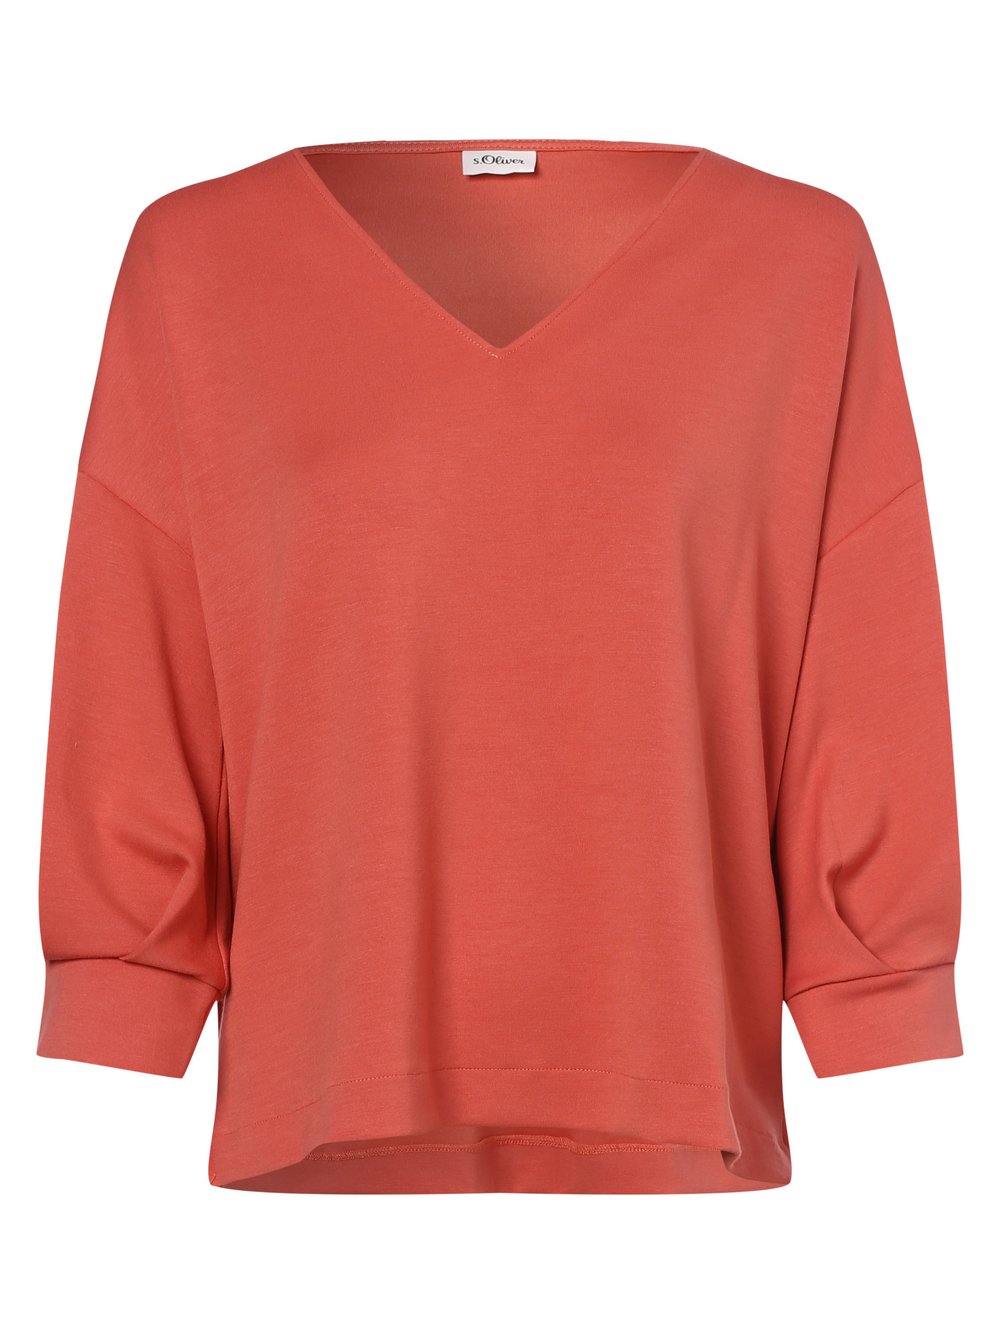 s.Oliver BLACK LABEL - Damska bluza nierozpinana, pomarańczowy|czerwony